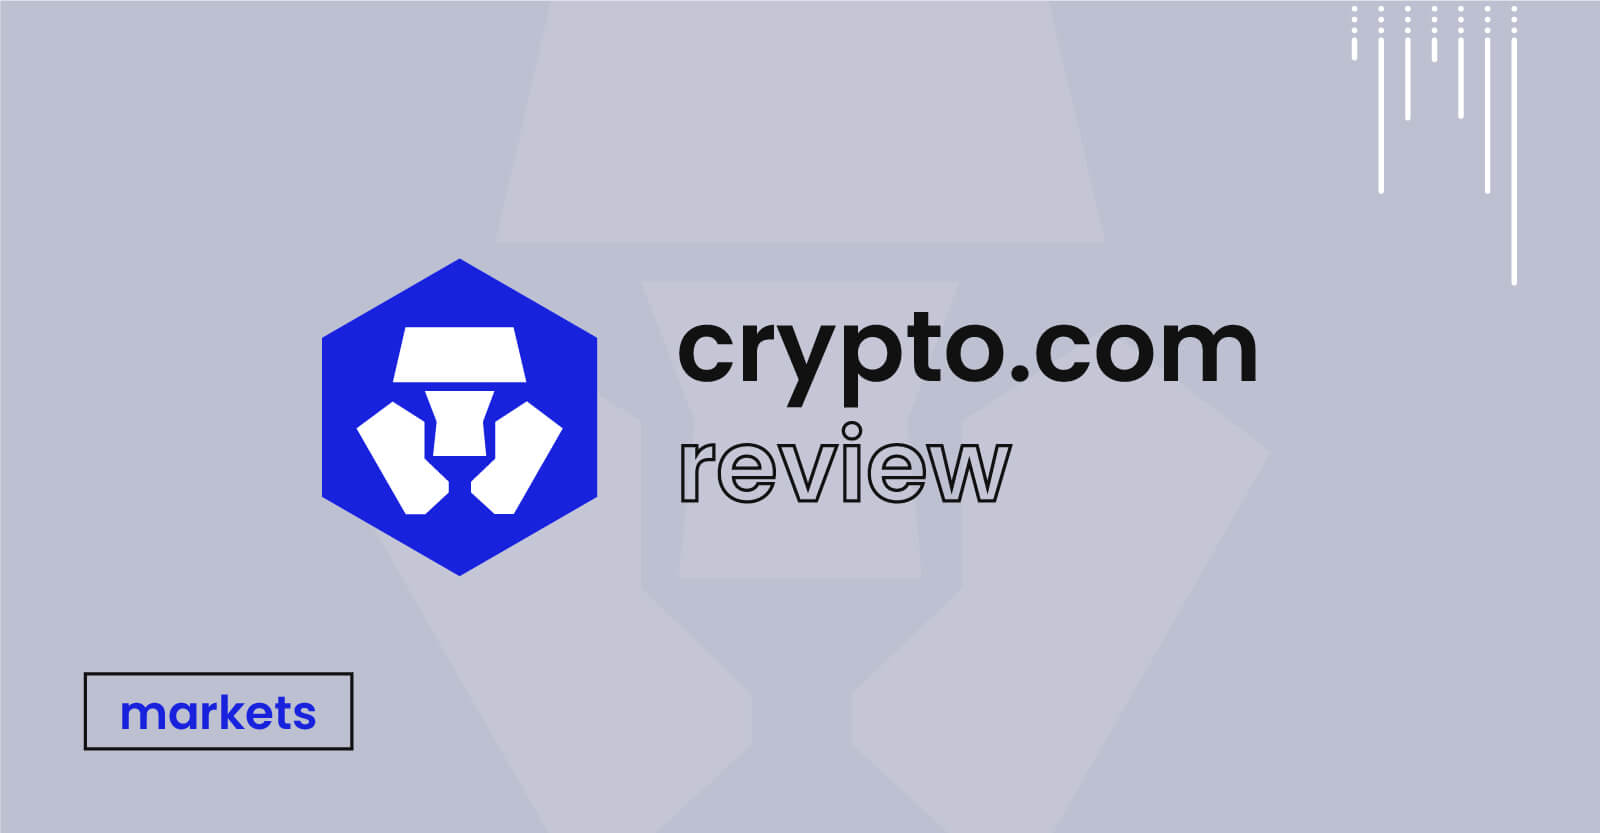 crypto.com review uk